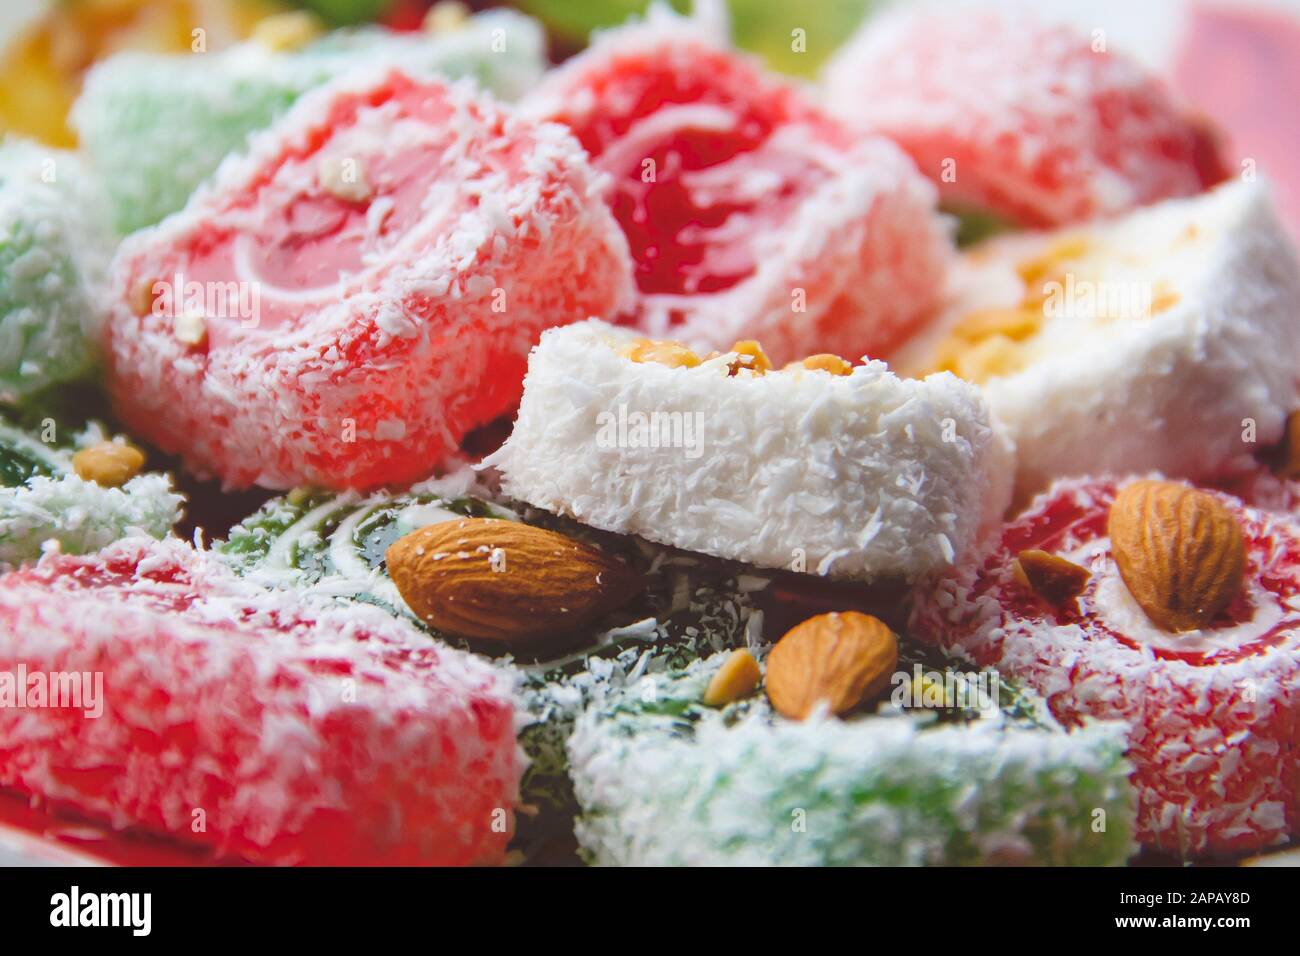 Nahaufnahme von Süßigkeiten türkische Köstlichkeiten. Rote türkische Freude von Rot, Weiß und Grün mit Mandelnüssen. Fotografie von Desserts. Stockfoto